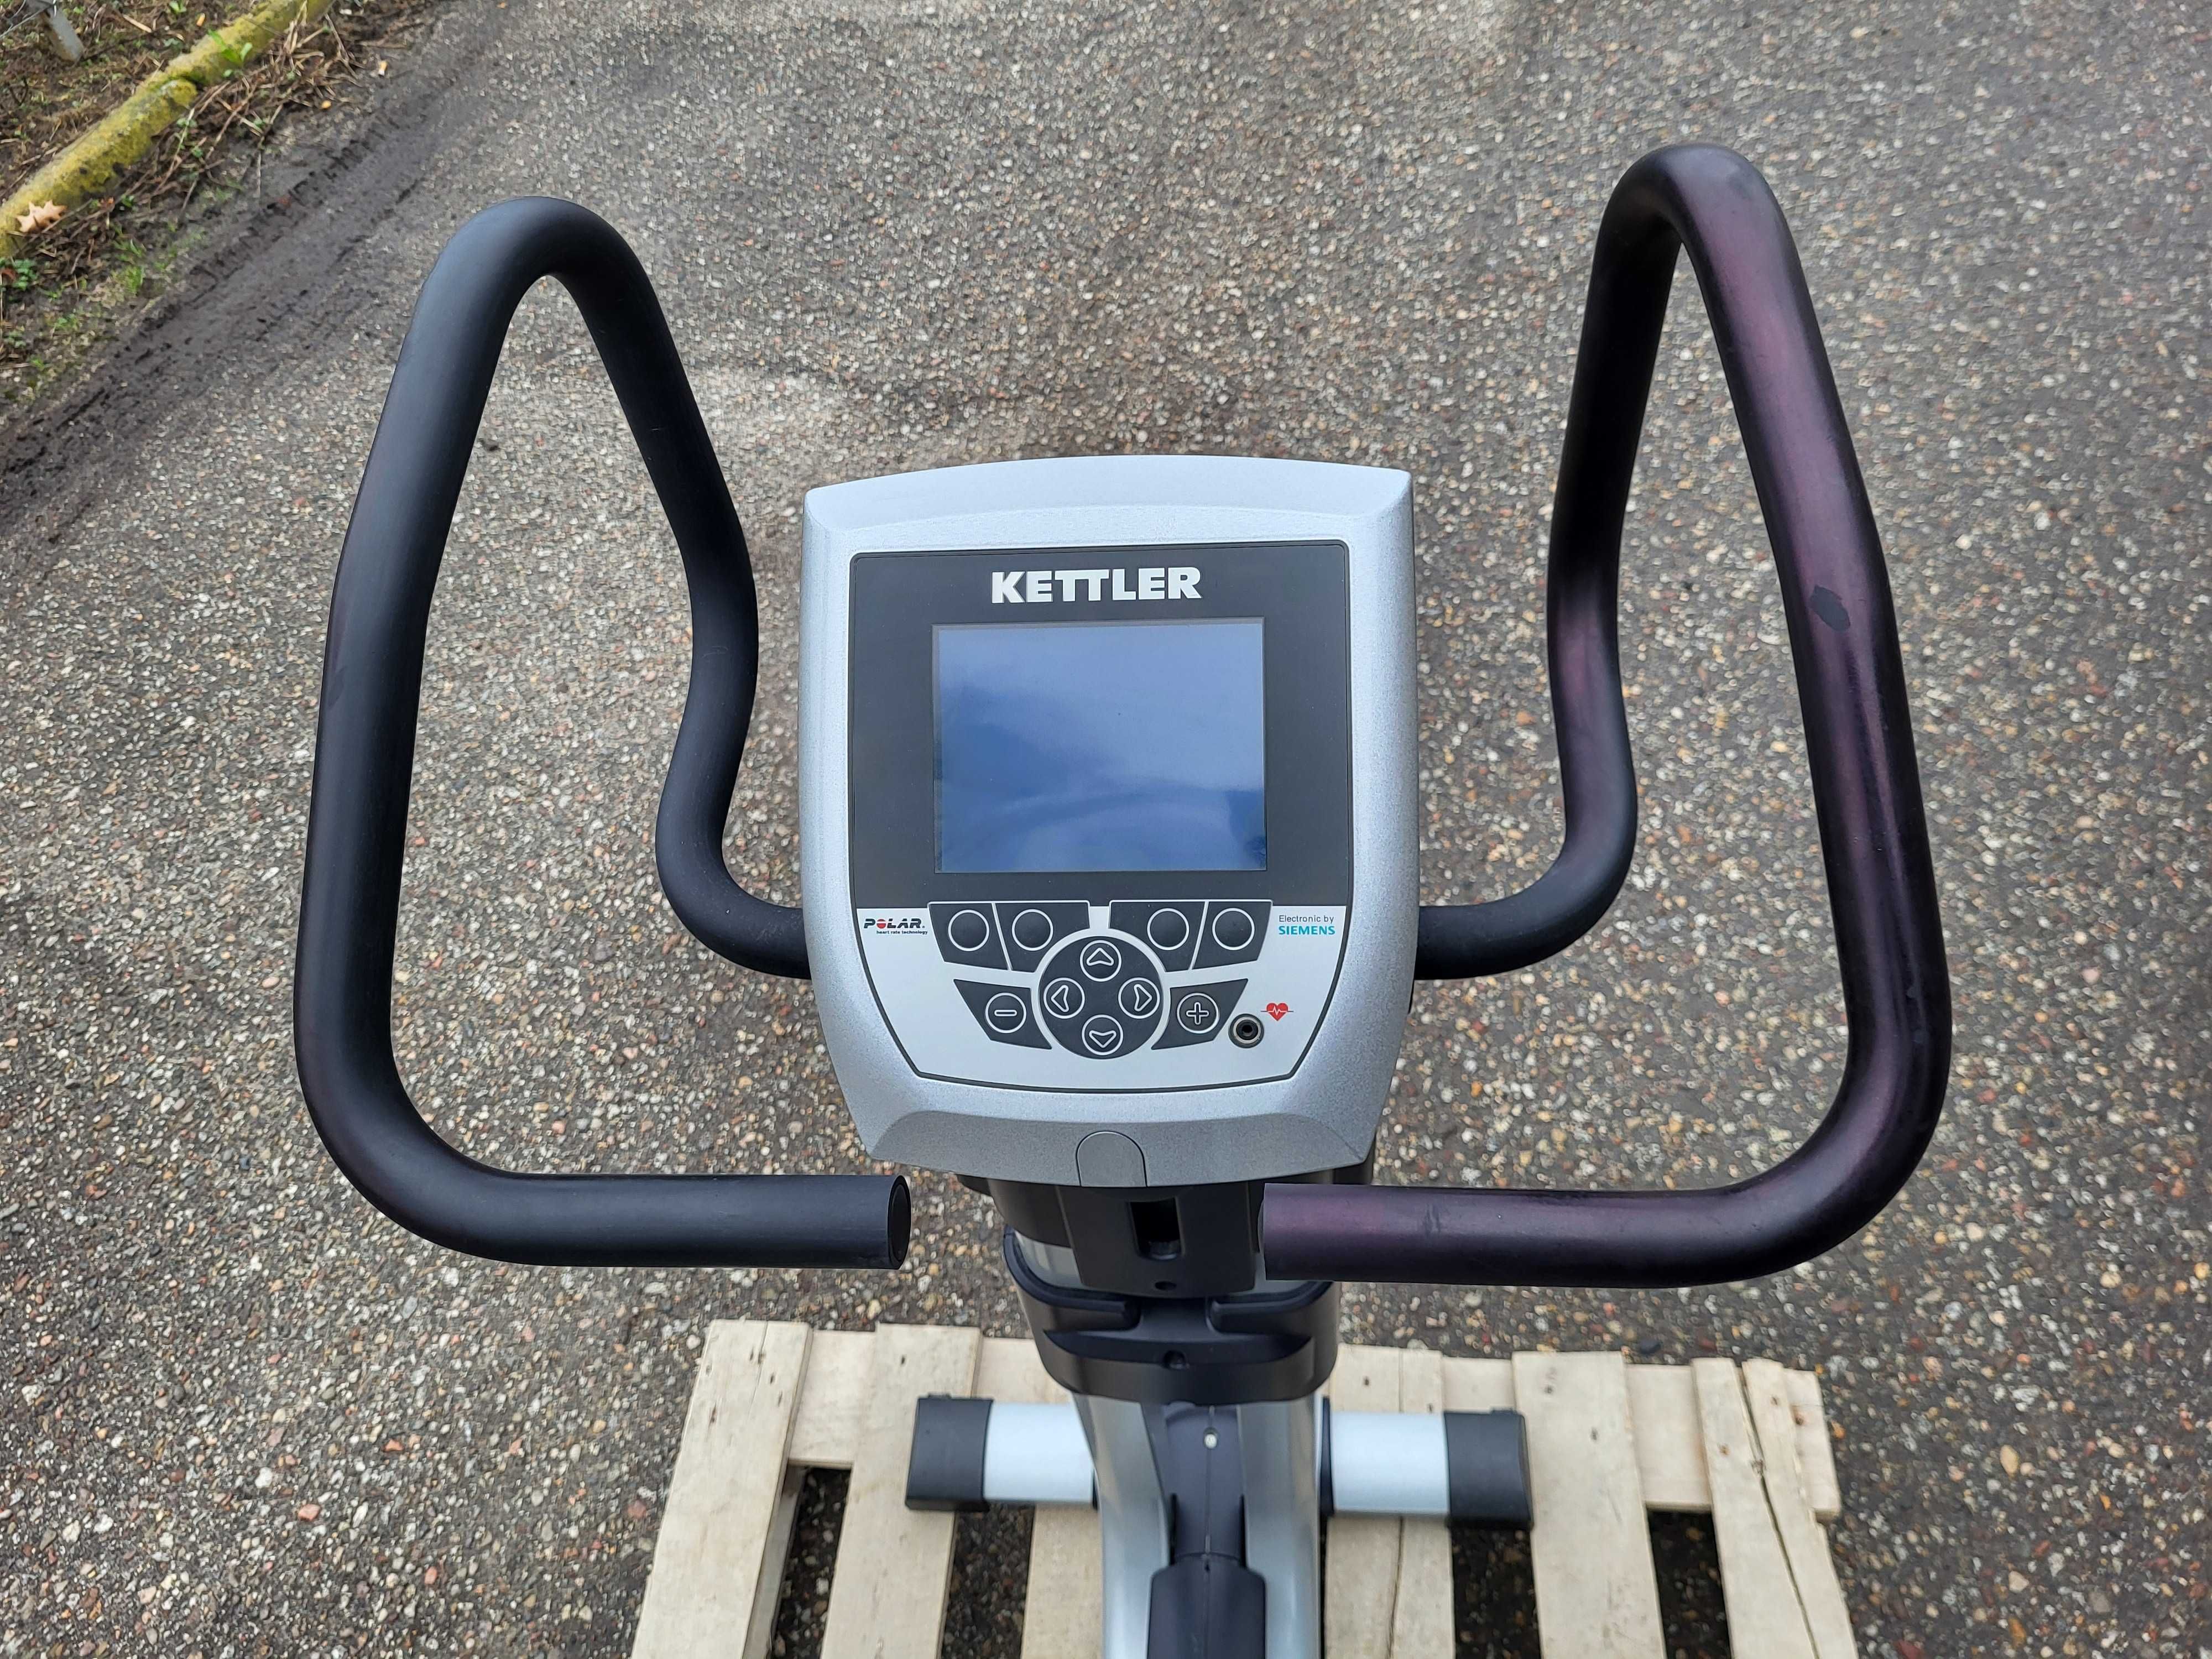 Używany rower Kettler Axiom do 180kg, wysyłka w całości